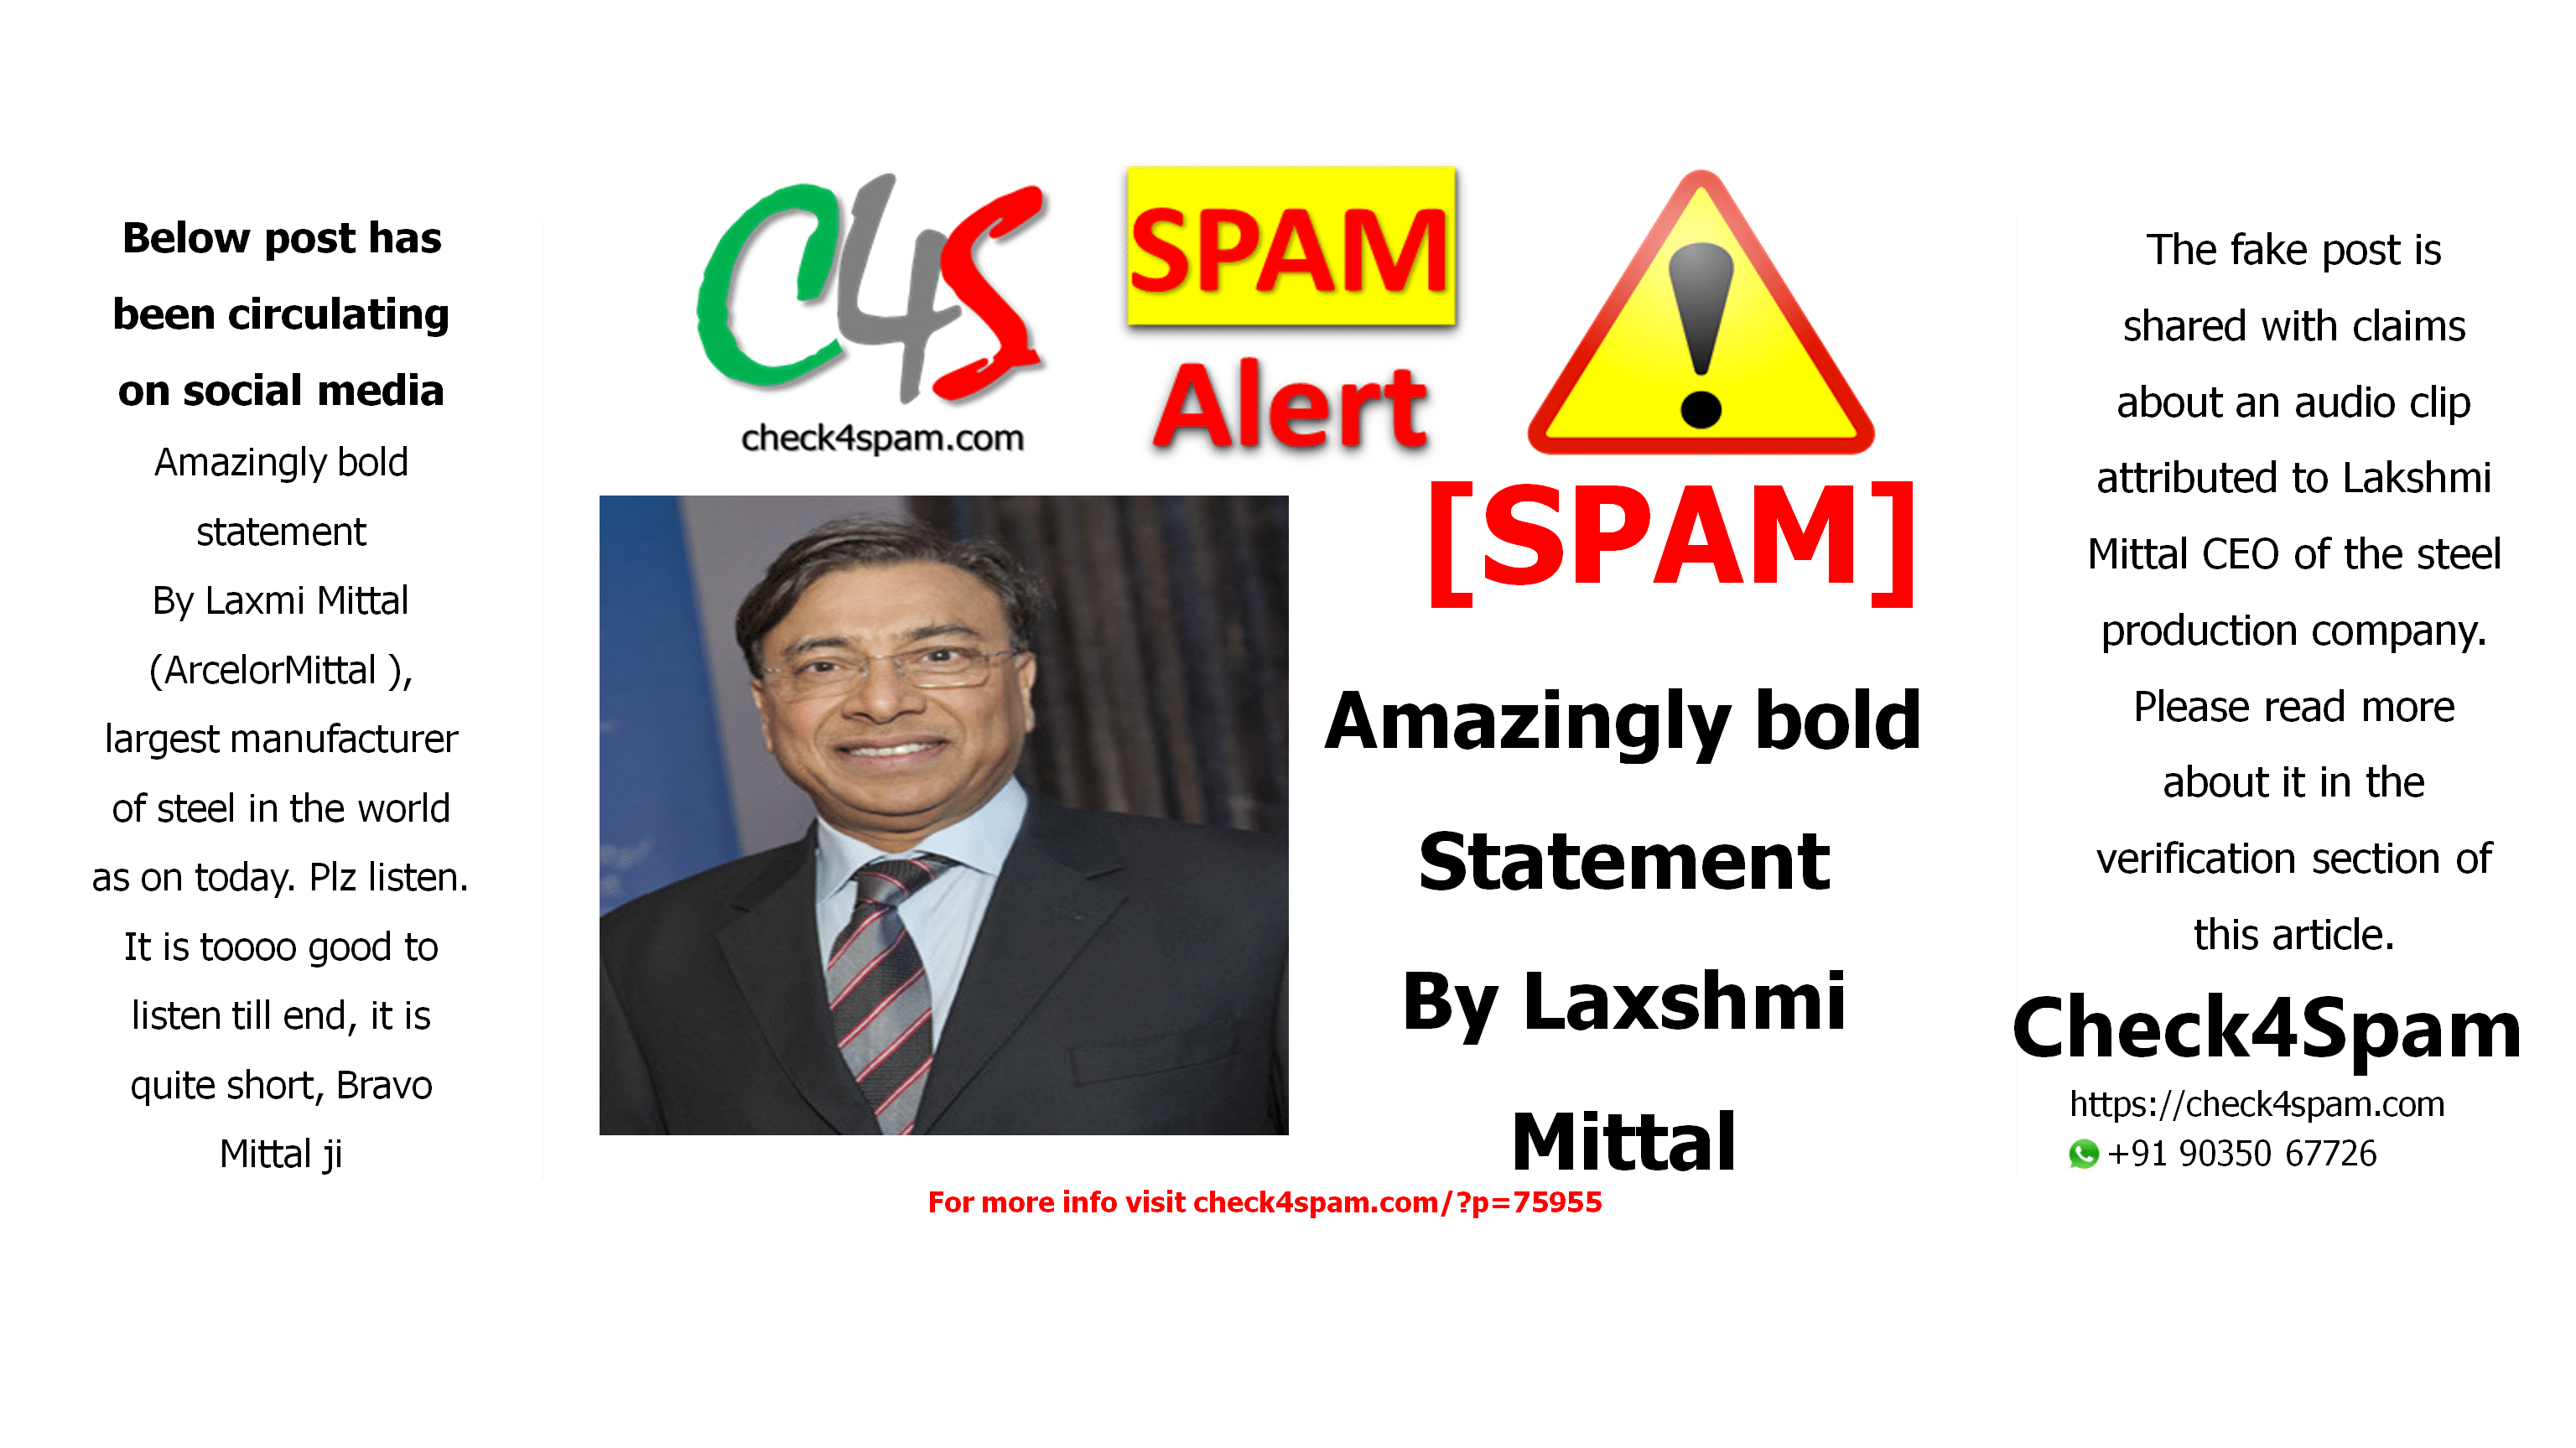 Amazingly Bold Statement By Laxshmi Mittal